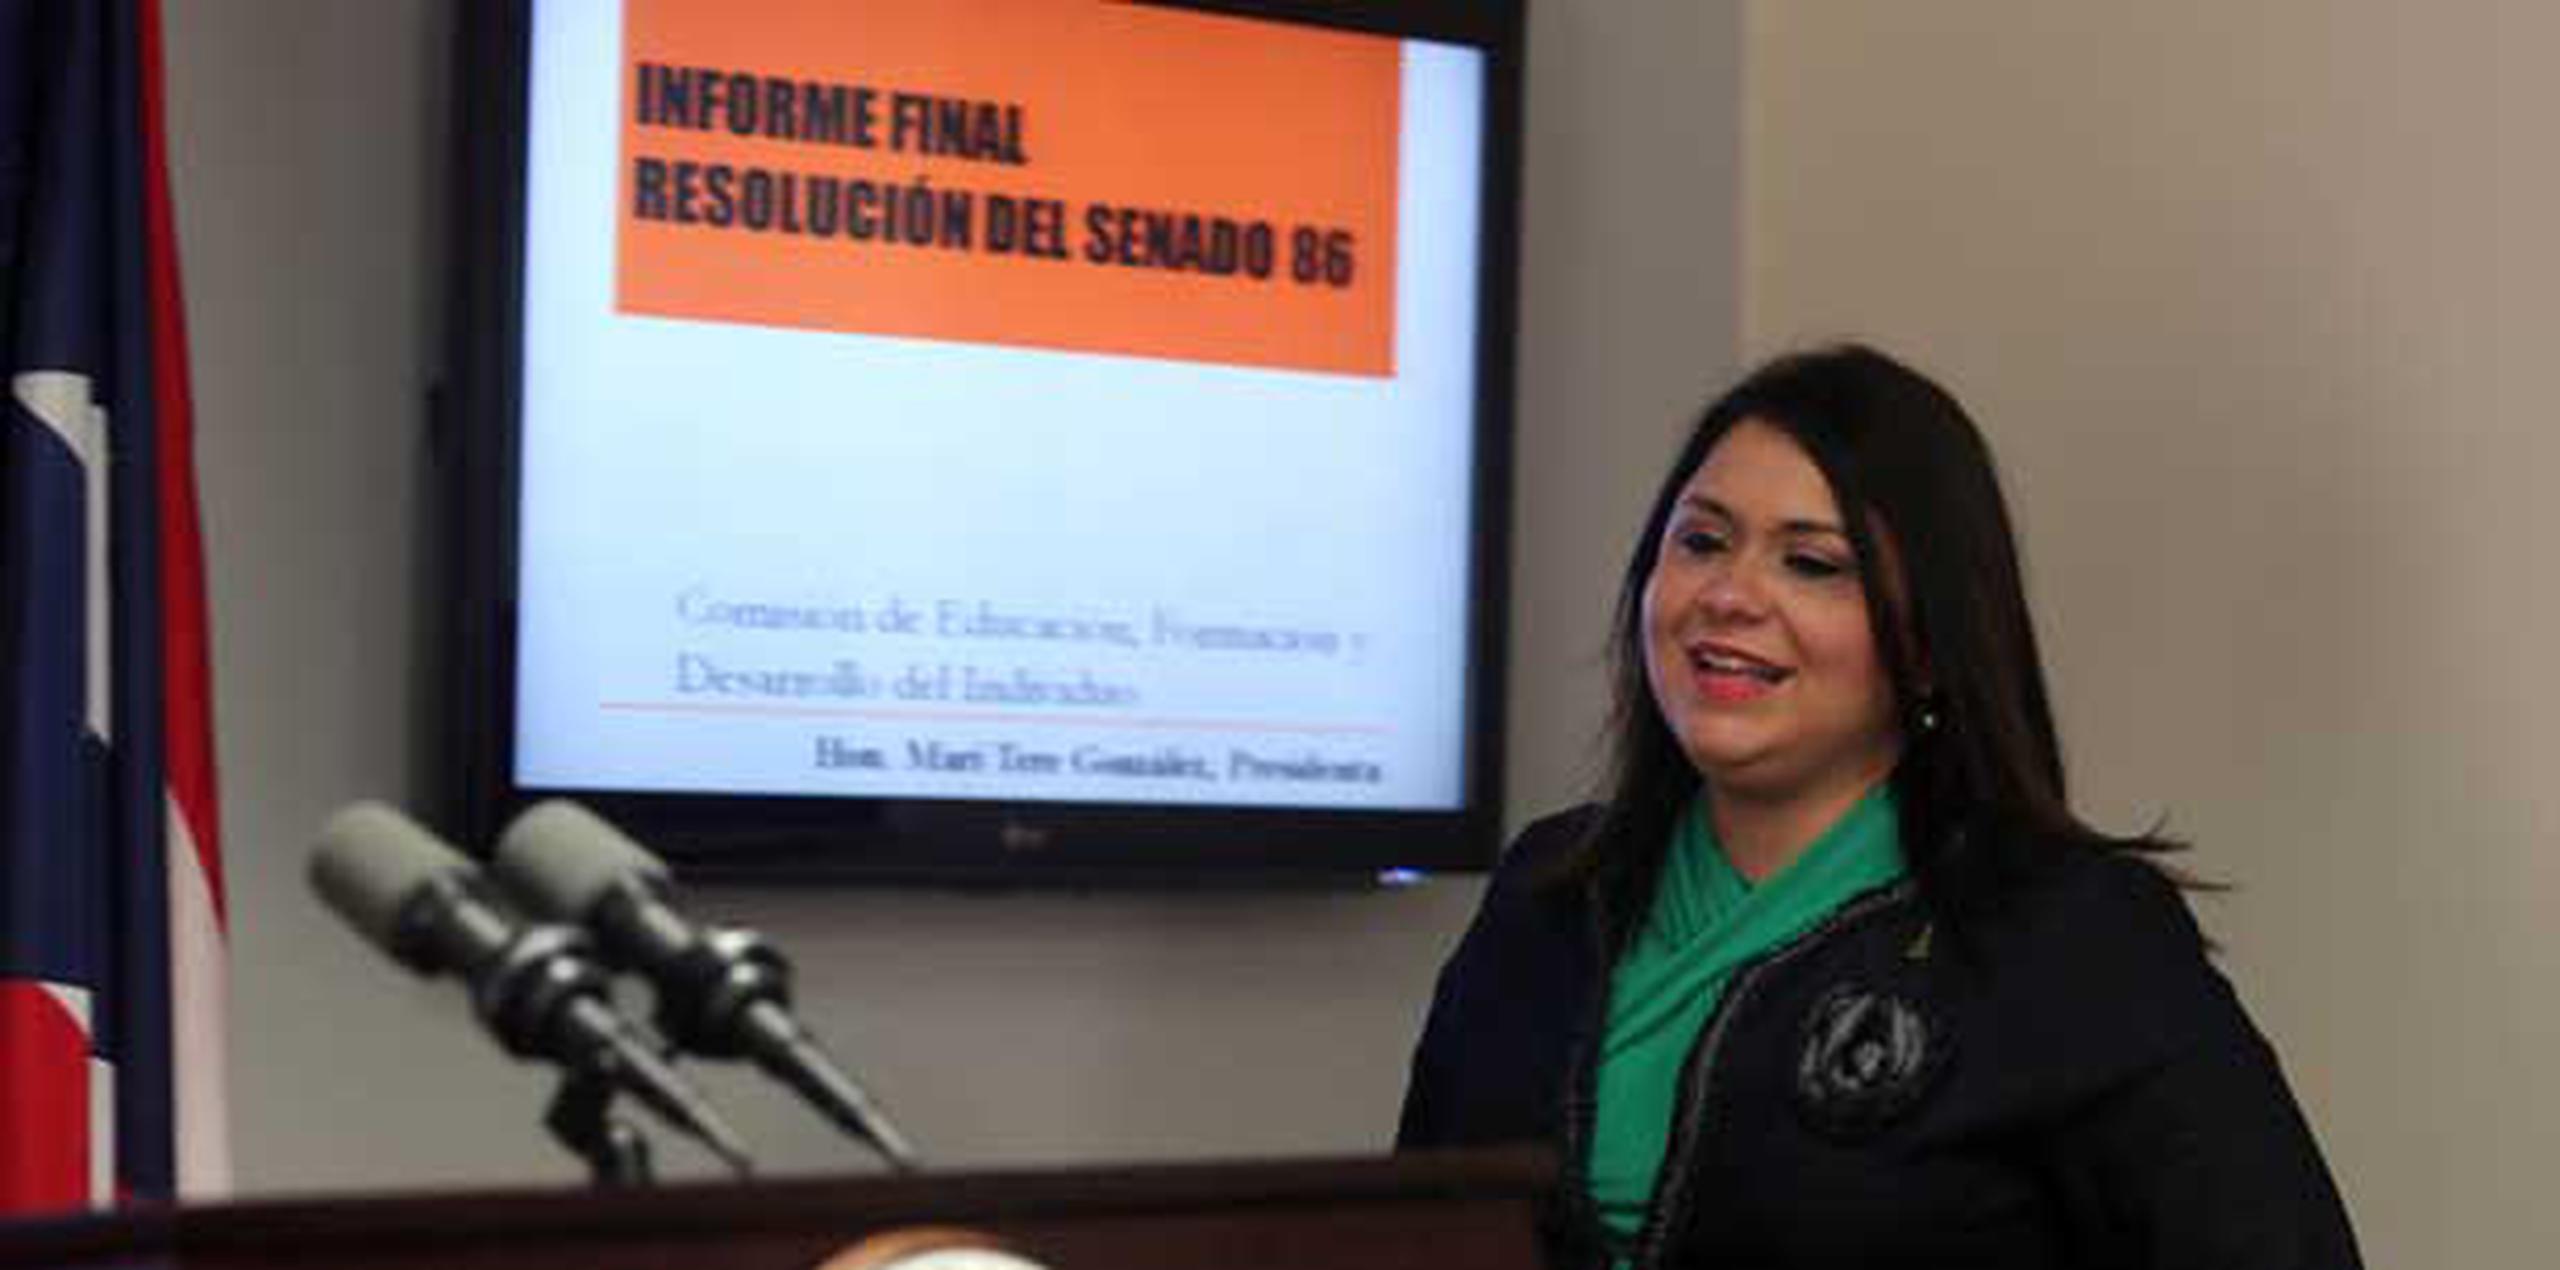 La senadora popular Mari Tere González dijo que información recopilada por la Comisión de Educación documentó una "doble compensación" indebida para personal a cargo de investigaciones subvencionadas por la NSF.  (Mariel Mejía Ortiz / GFR Media)